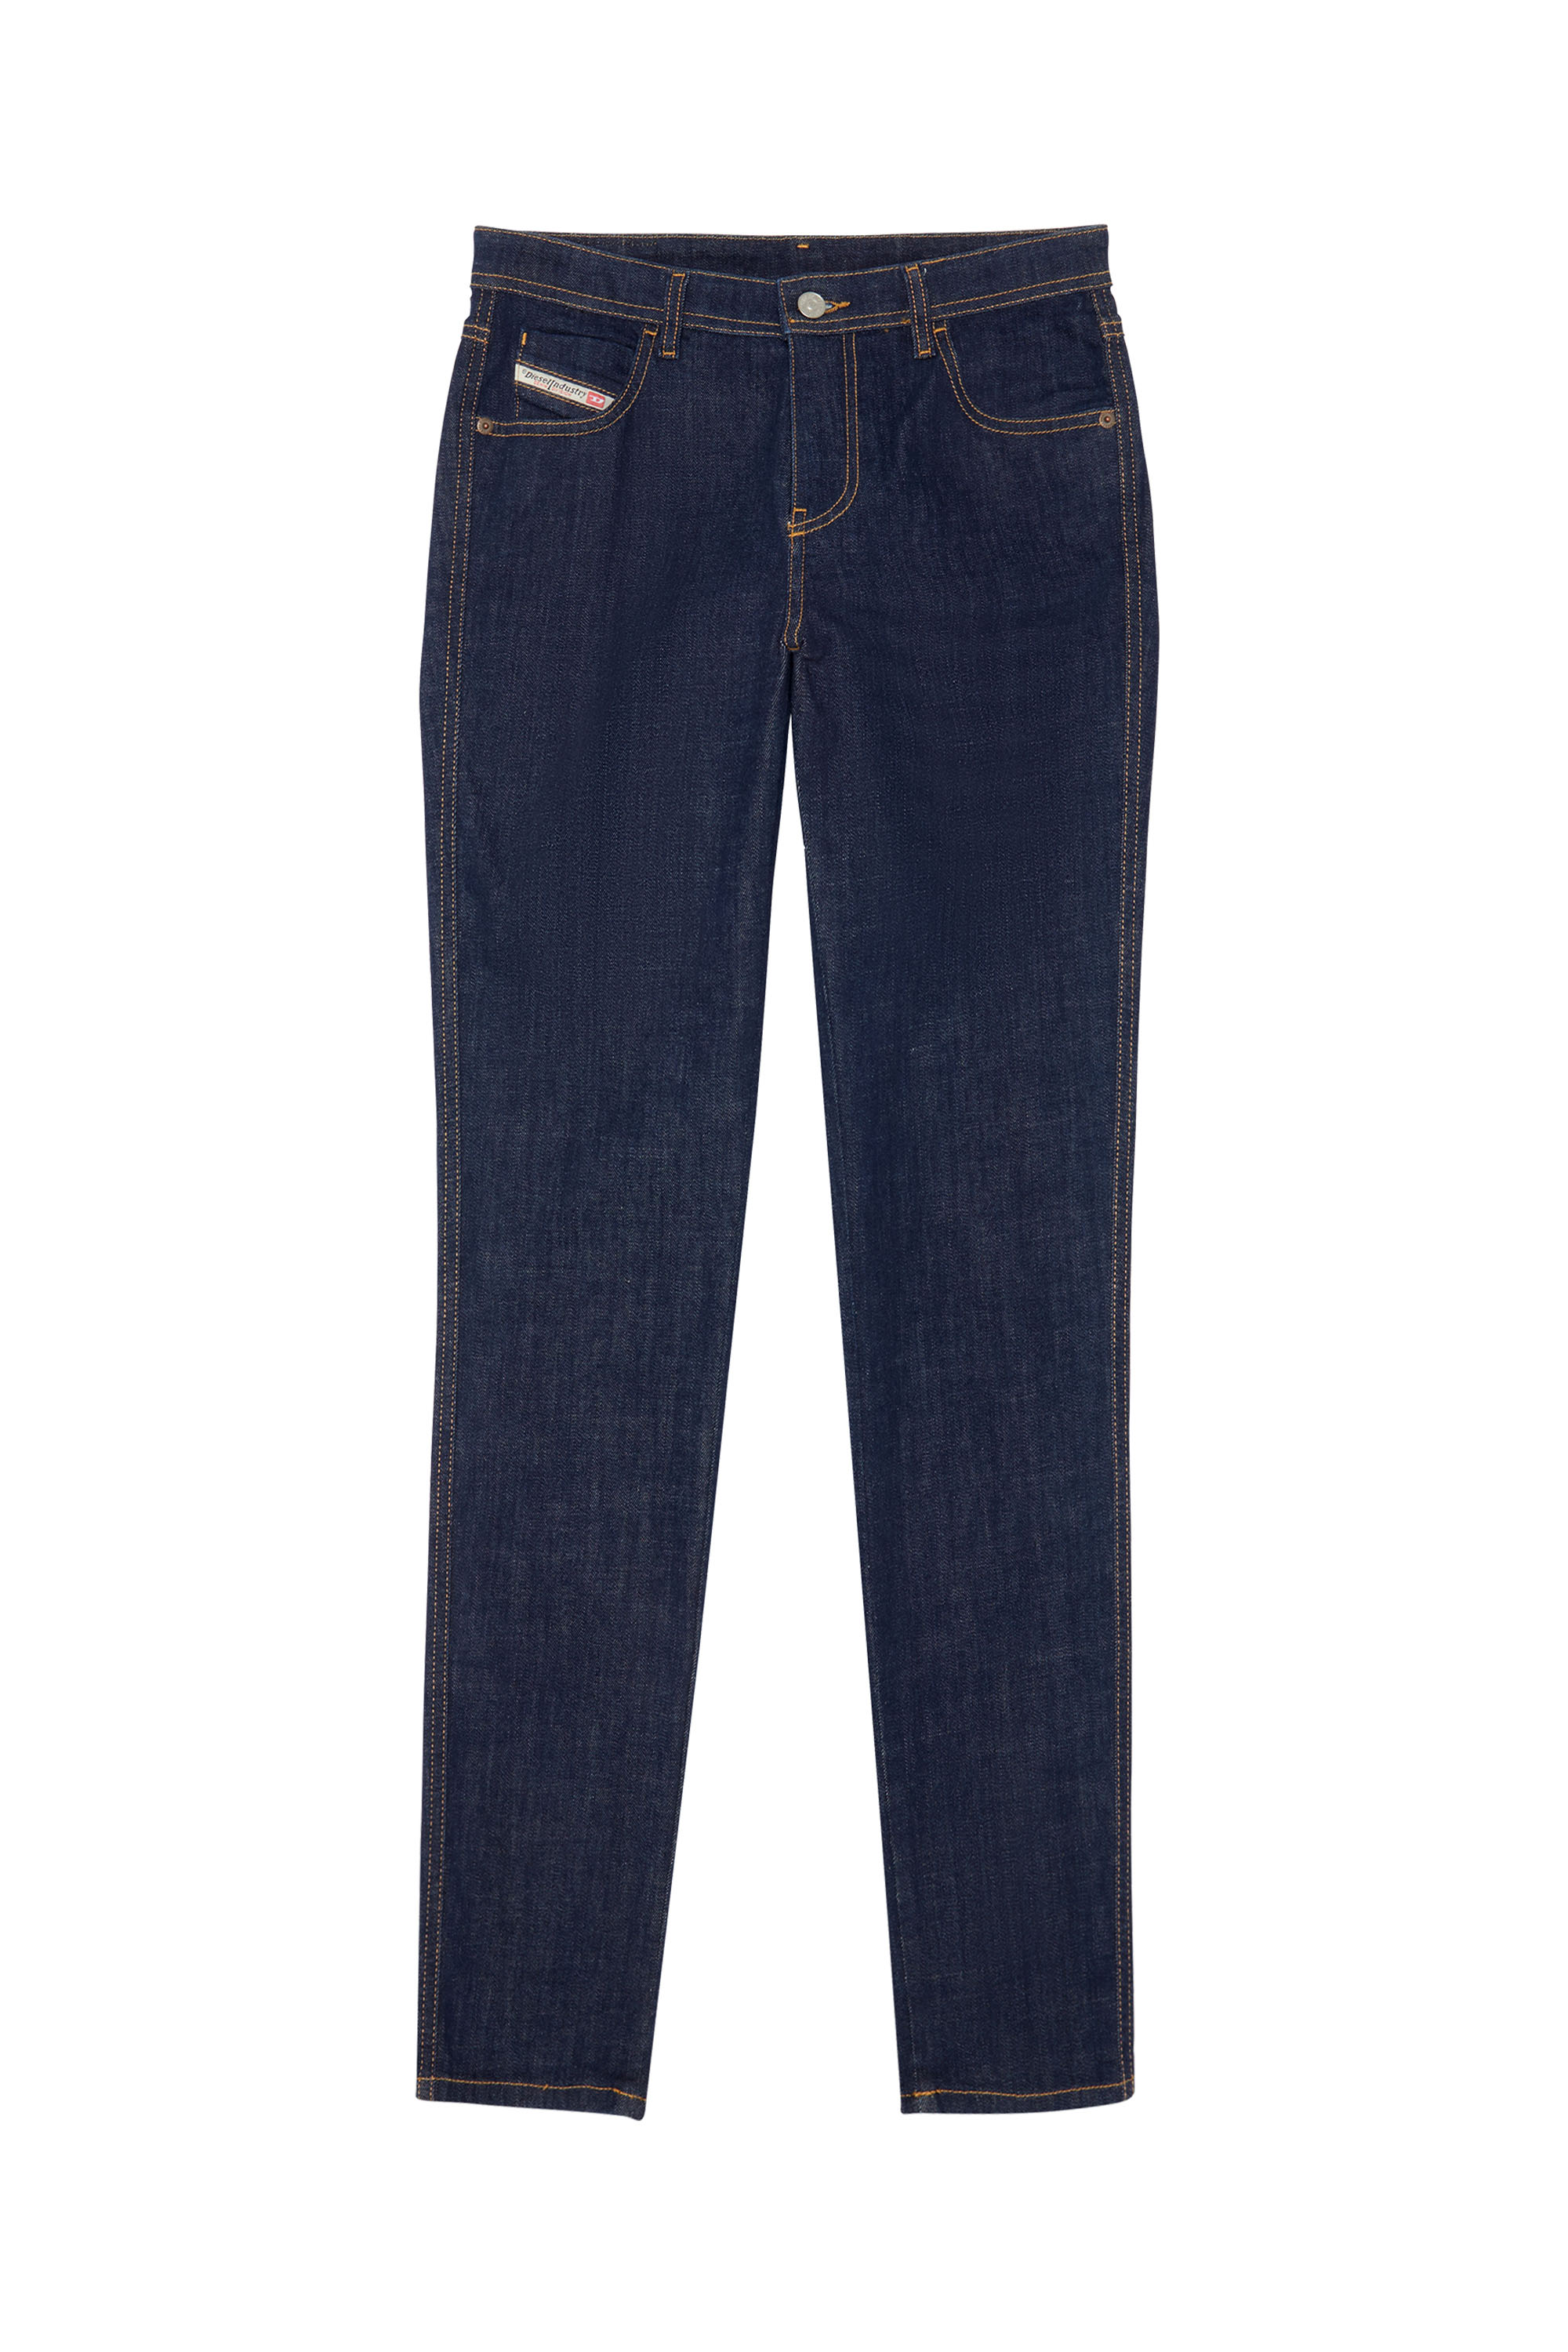 2015 BABHILA Z9C17 Skinny Jeans, Dark Blue - Jeans